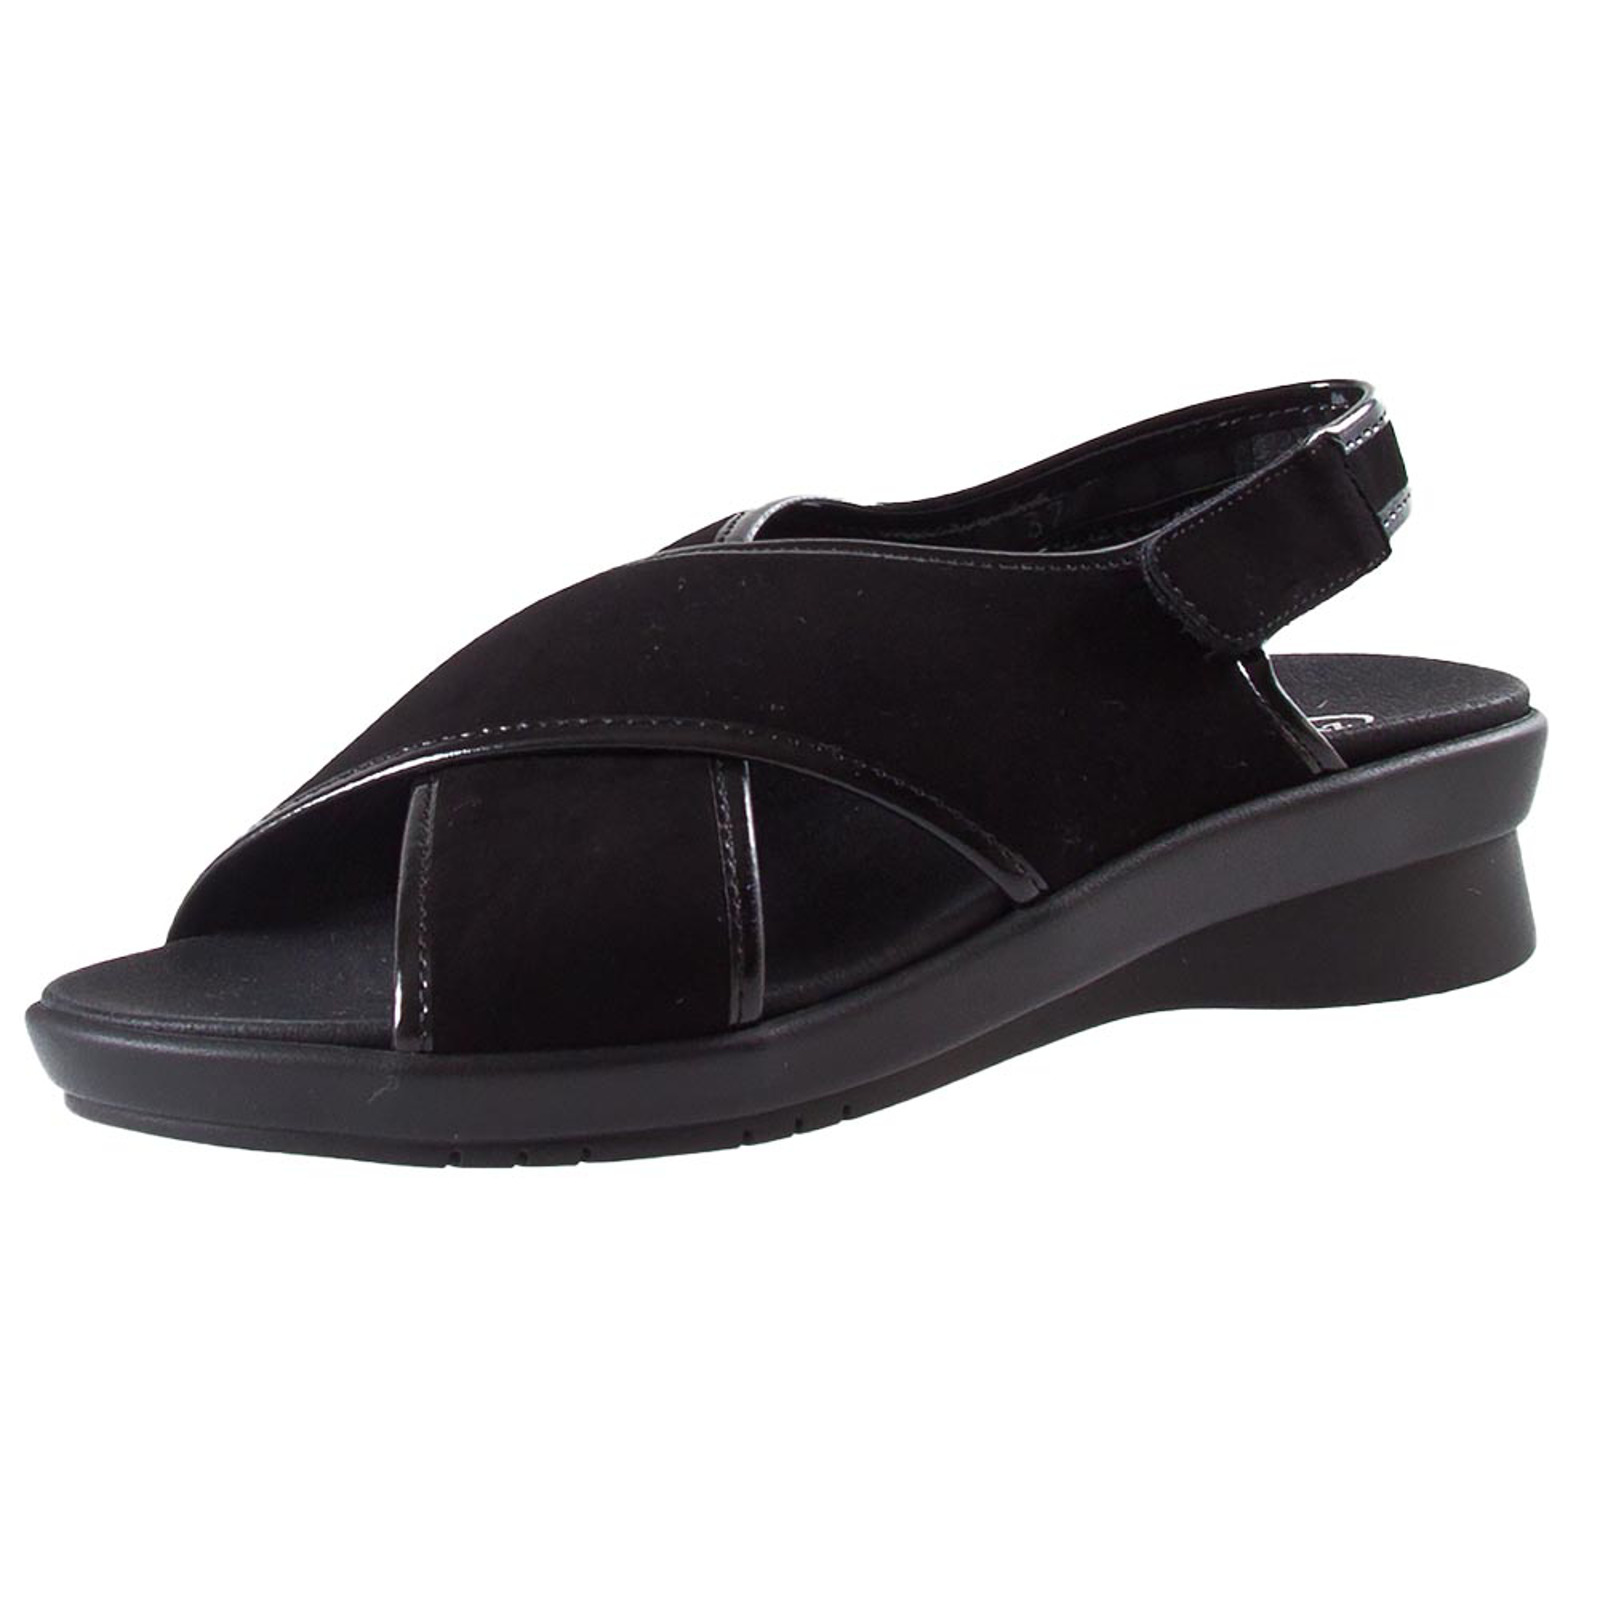 Bijproduct nauwkeurig Bijzettafeltje Stijlvolle sandaal met uitneembaar voetbed van de Zwartjes Comfort lijn